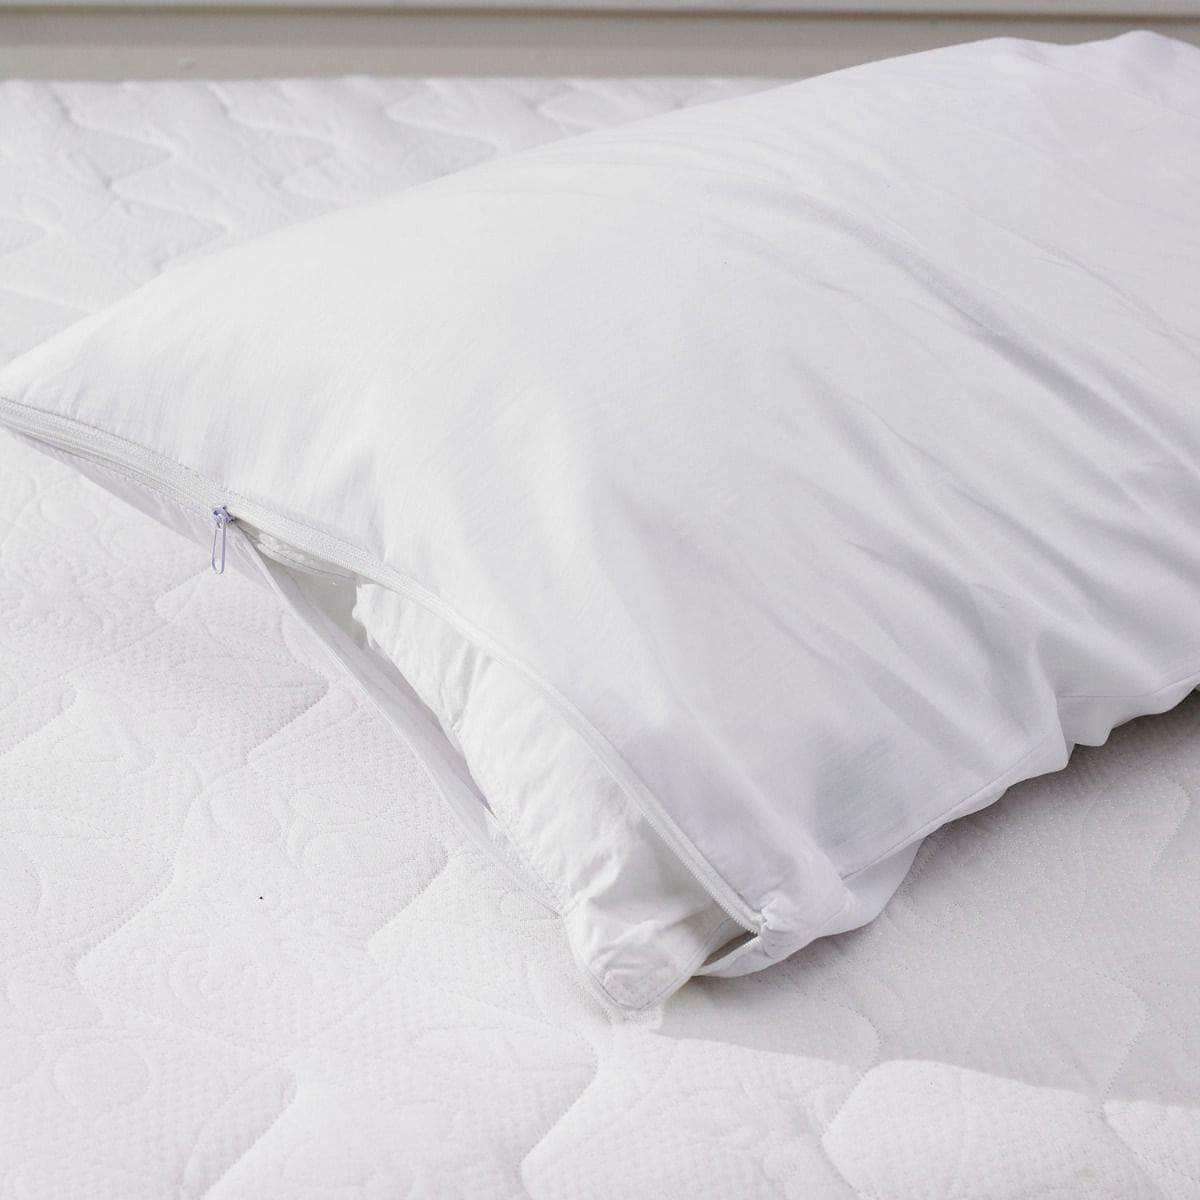 100% Cotton Pillow Protector With Zipper BedandbathLinen